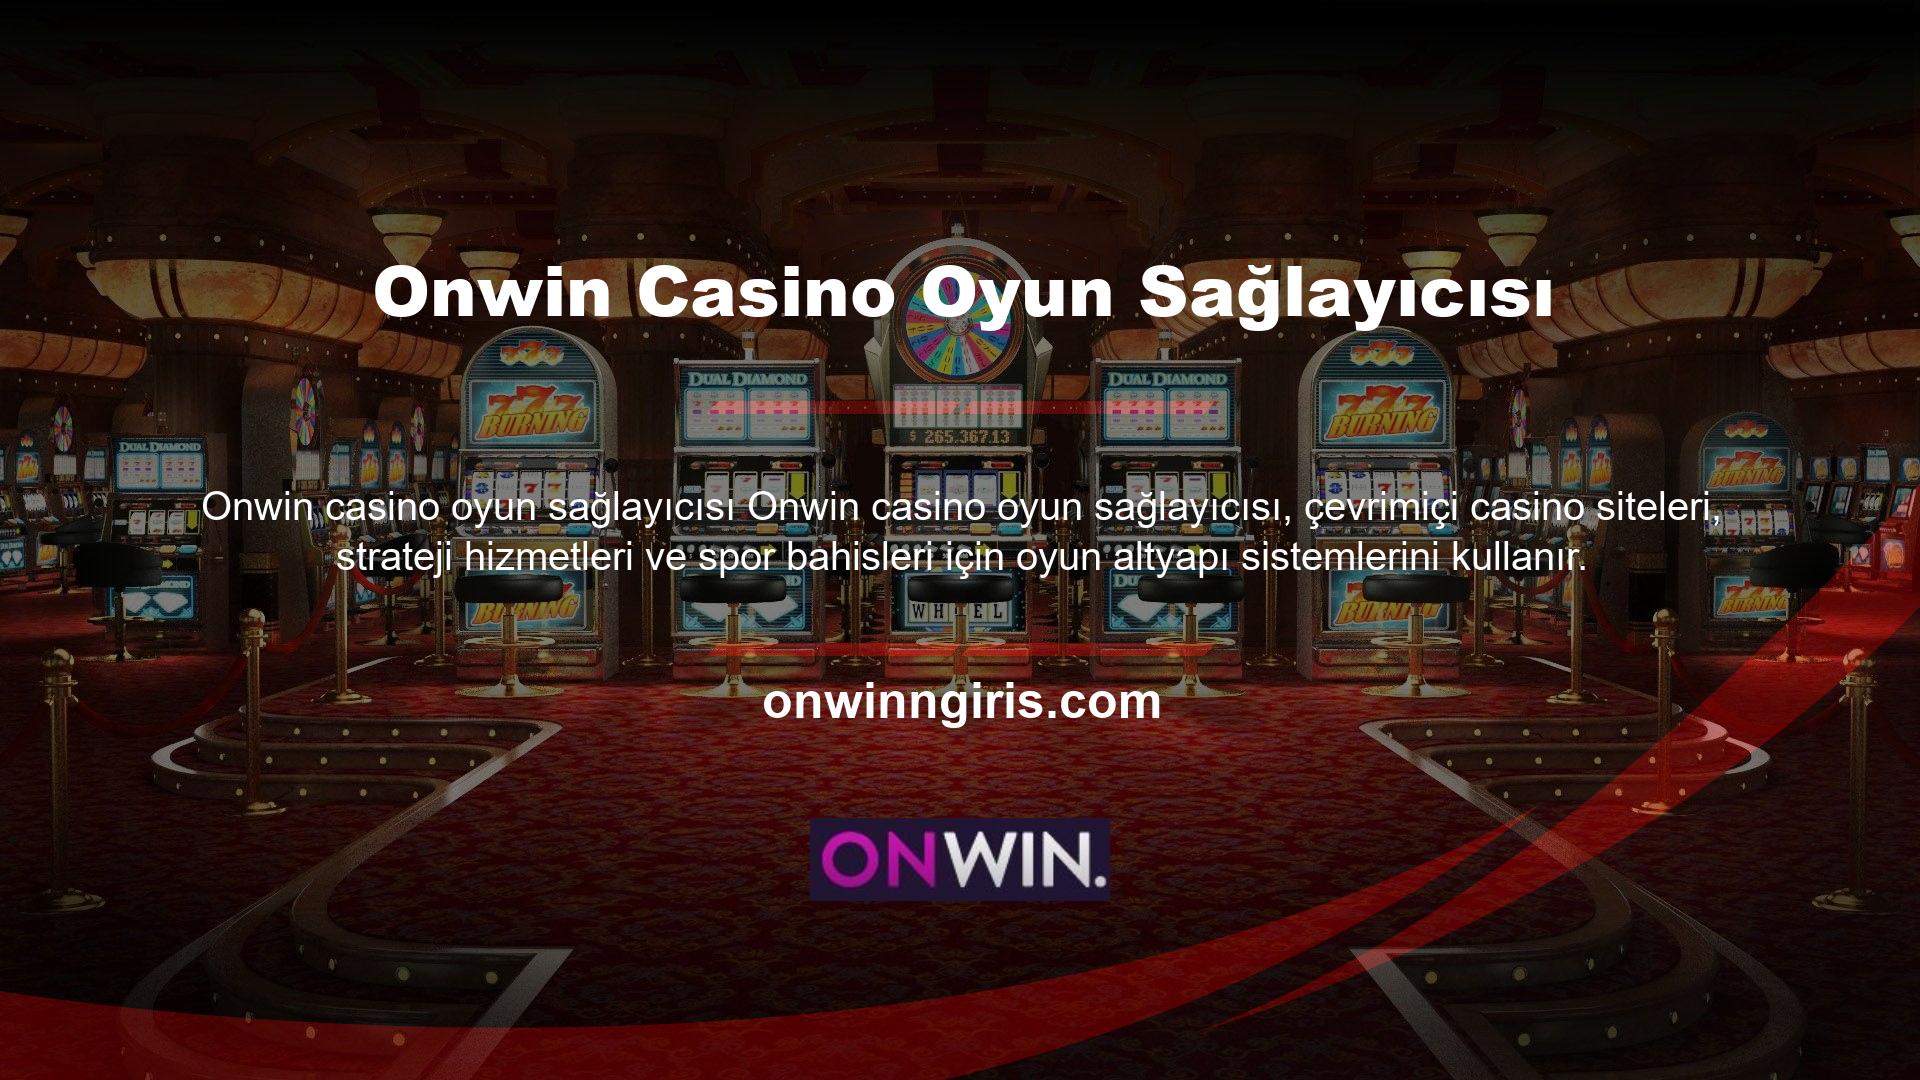 Casino oyun sağlayıcısı Onwin casino oyunlarını sunuyoruz ve çeşitli oyun sağlayıcıların altyapısını kullanıyoruz